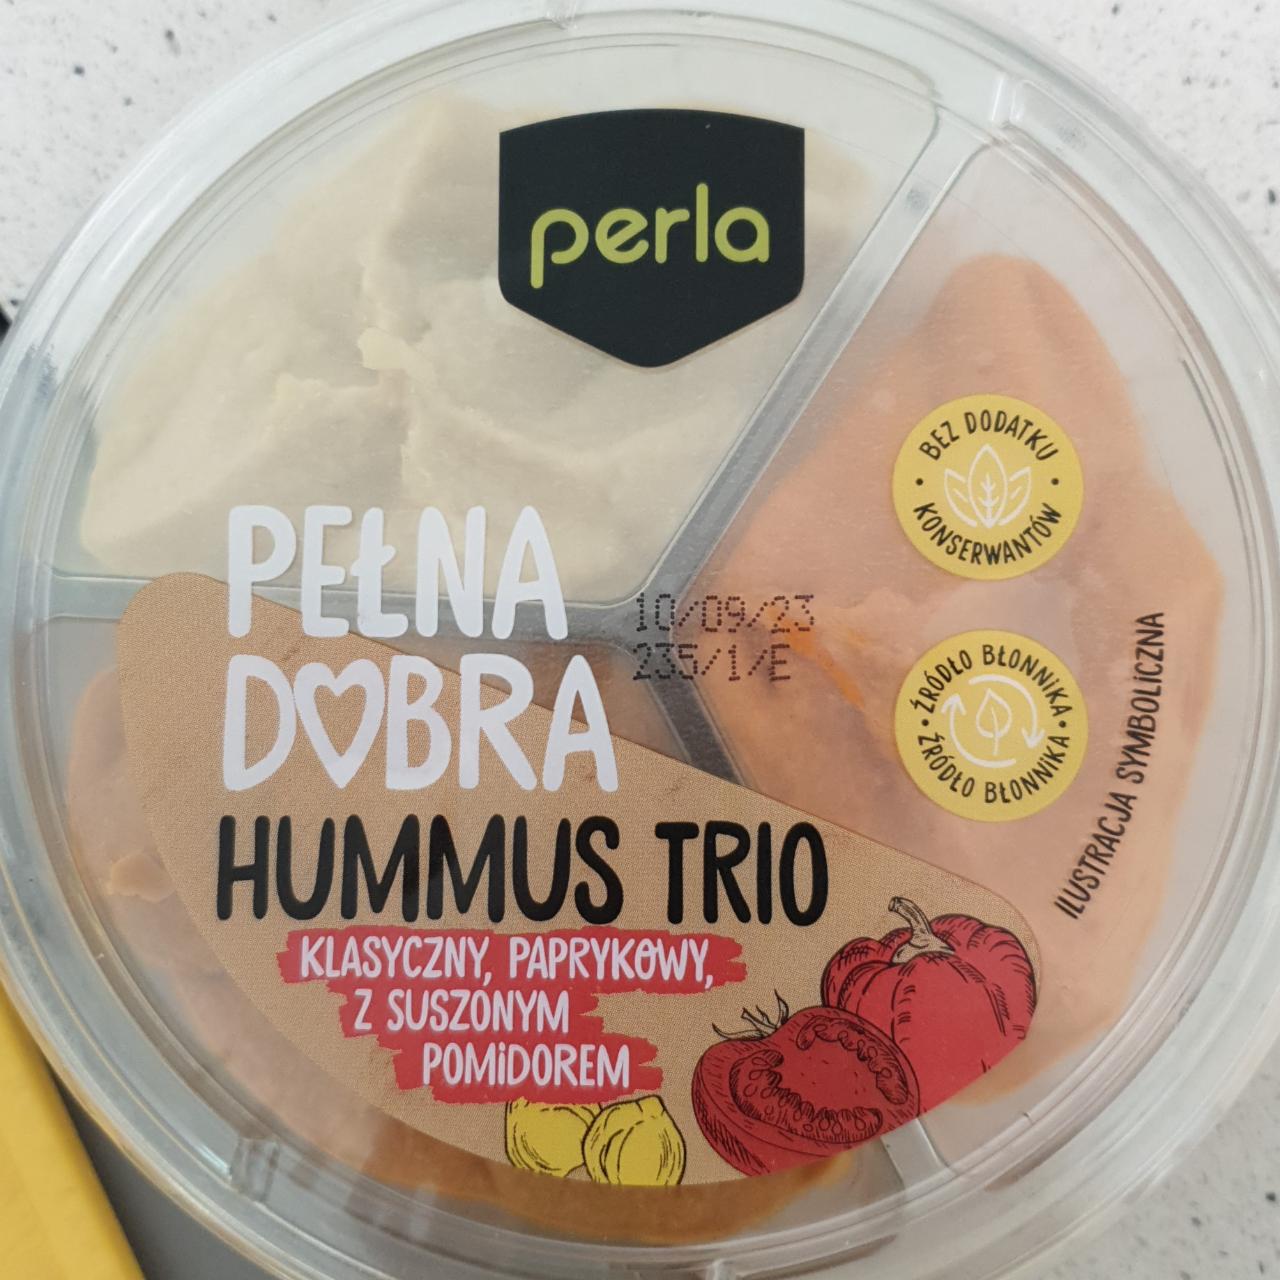 Zdjęcia - Hummus trio pomidor klasyczny paprykowy z suszonym pomidorem Perla